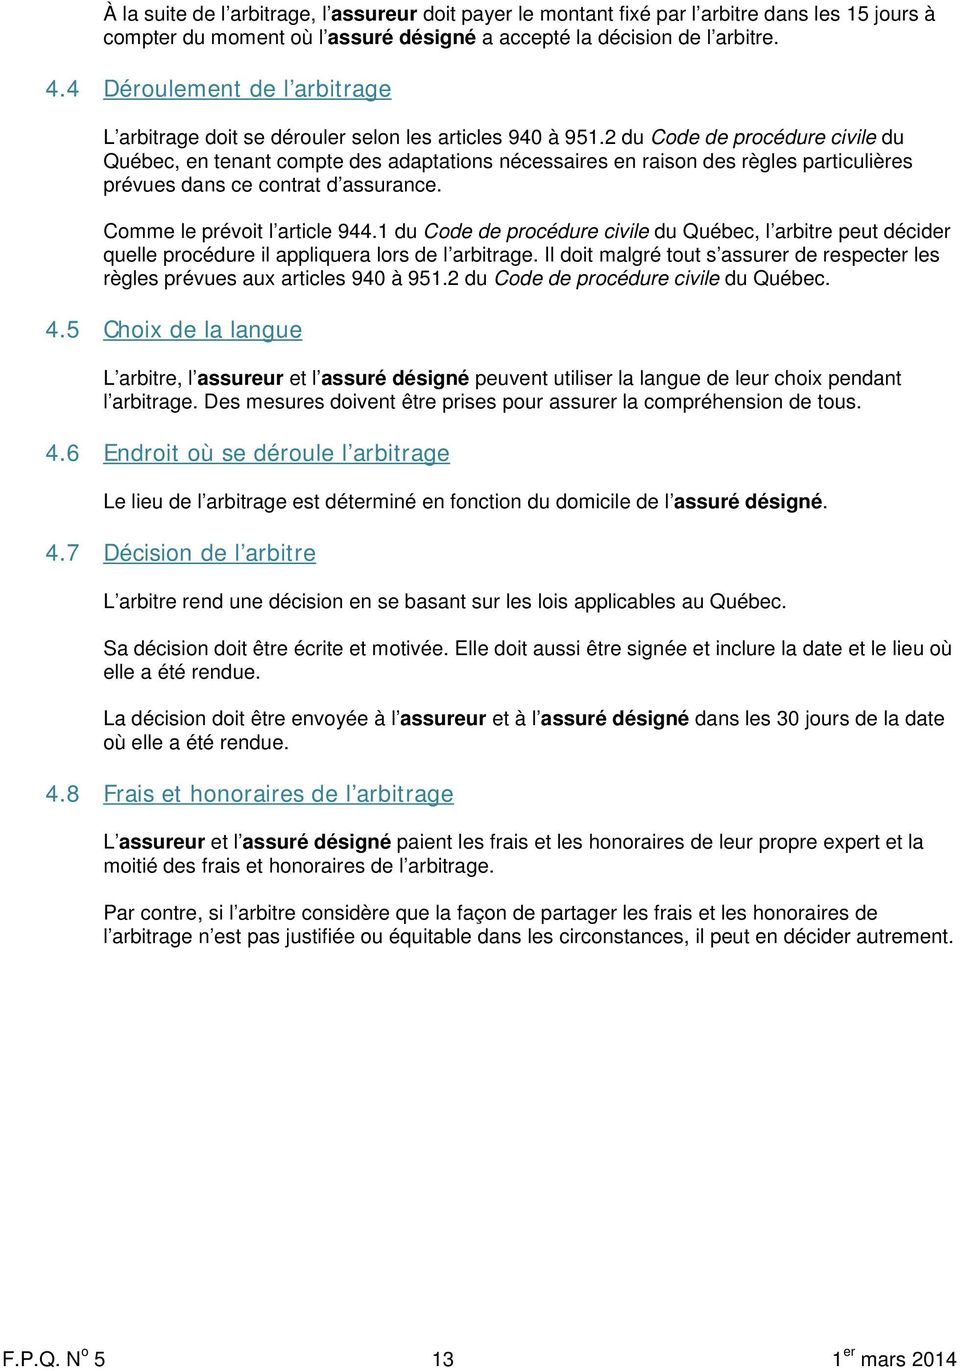 2 du Code de procédure civile du Québec, en tenant compte des adaptations nécessaires en raison des règles particulières prévues dans ce contrat d assurance. Comme le prévoit l article 944.